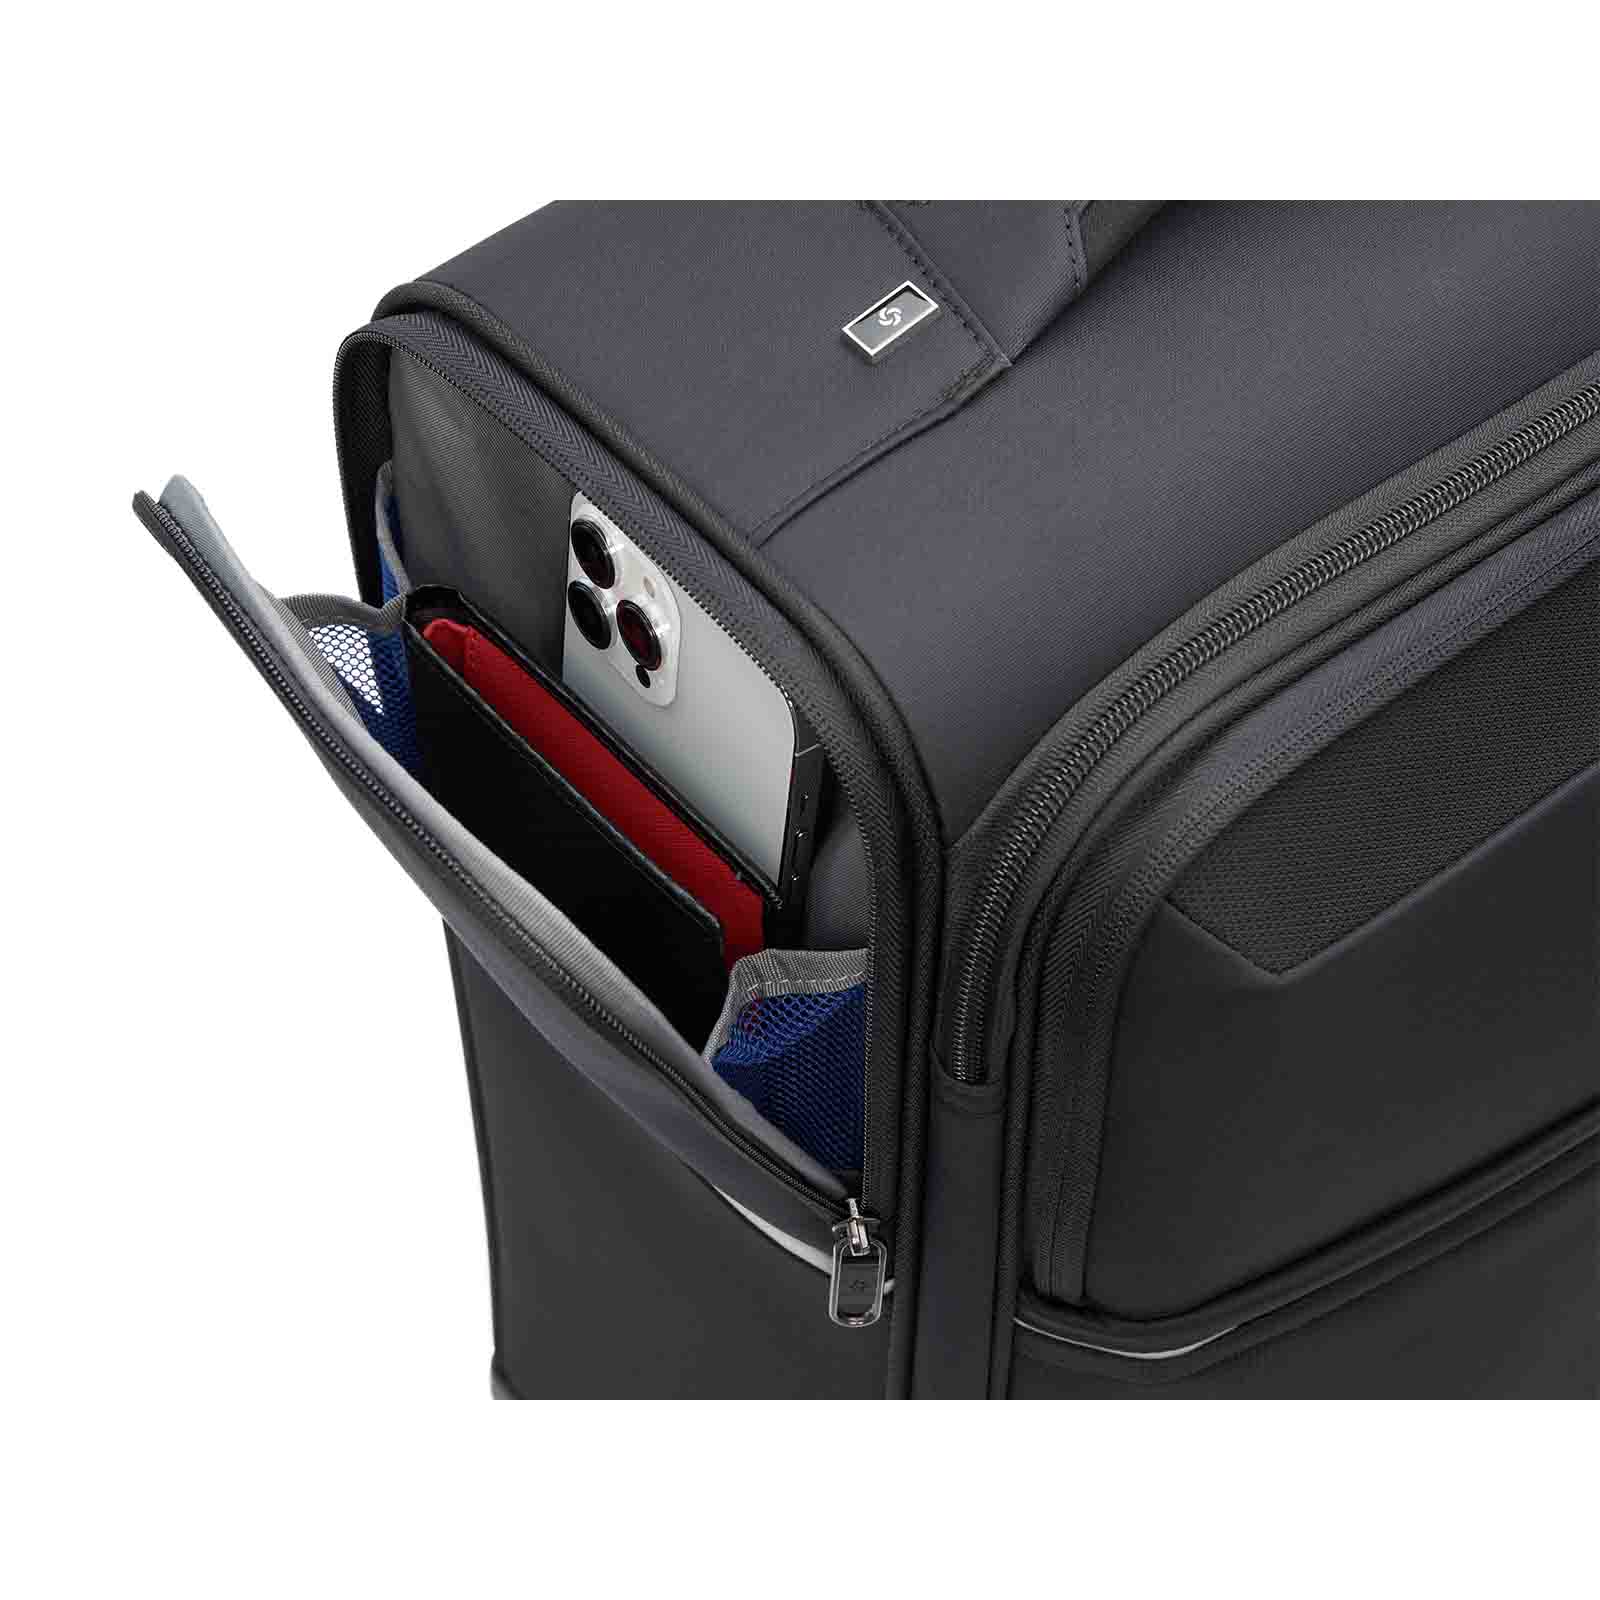 Samsonite-73h-55cm-Suitcase-Black-Pocket